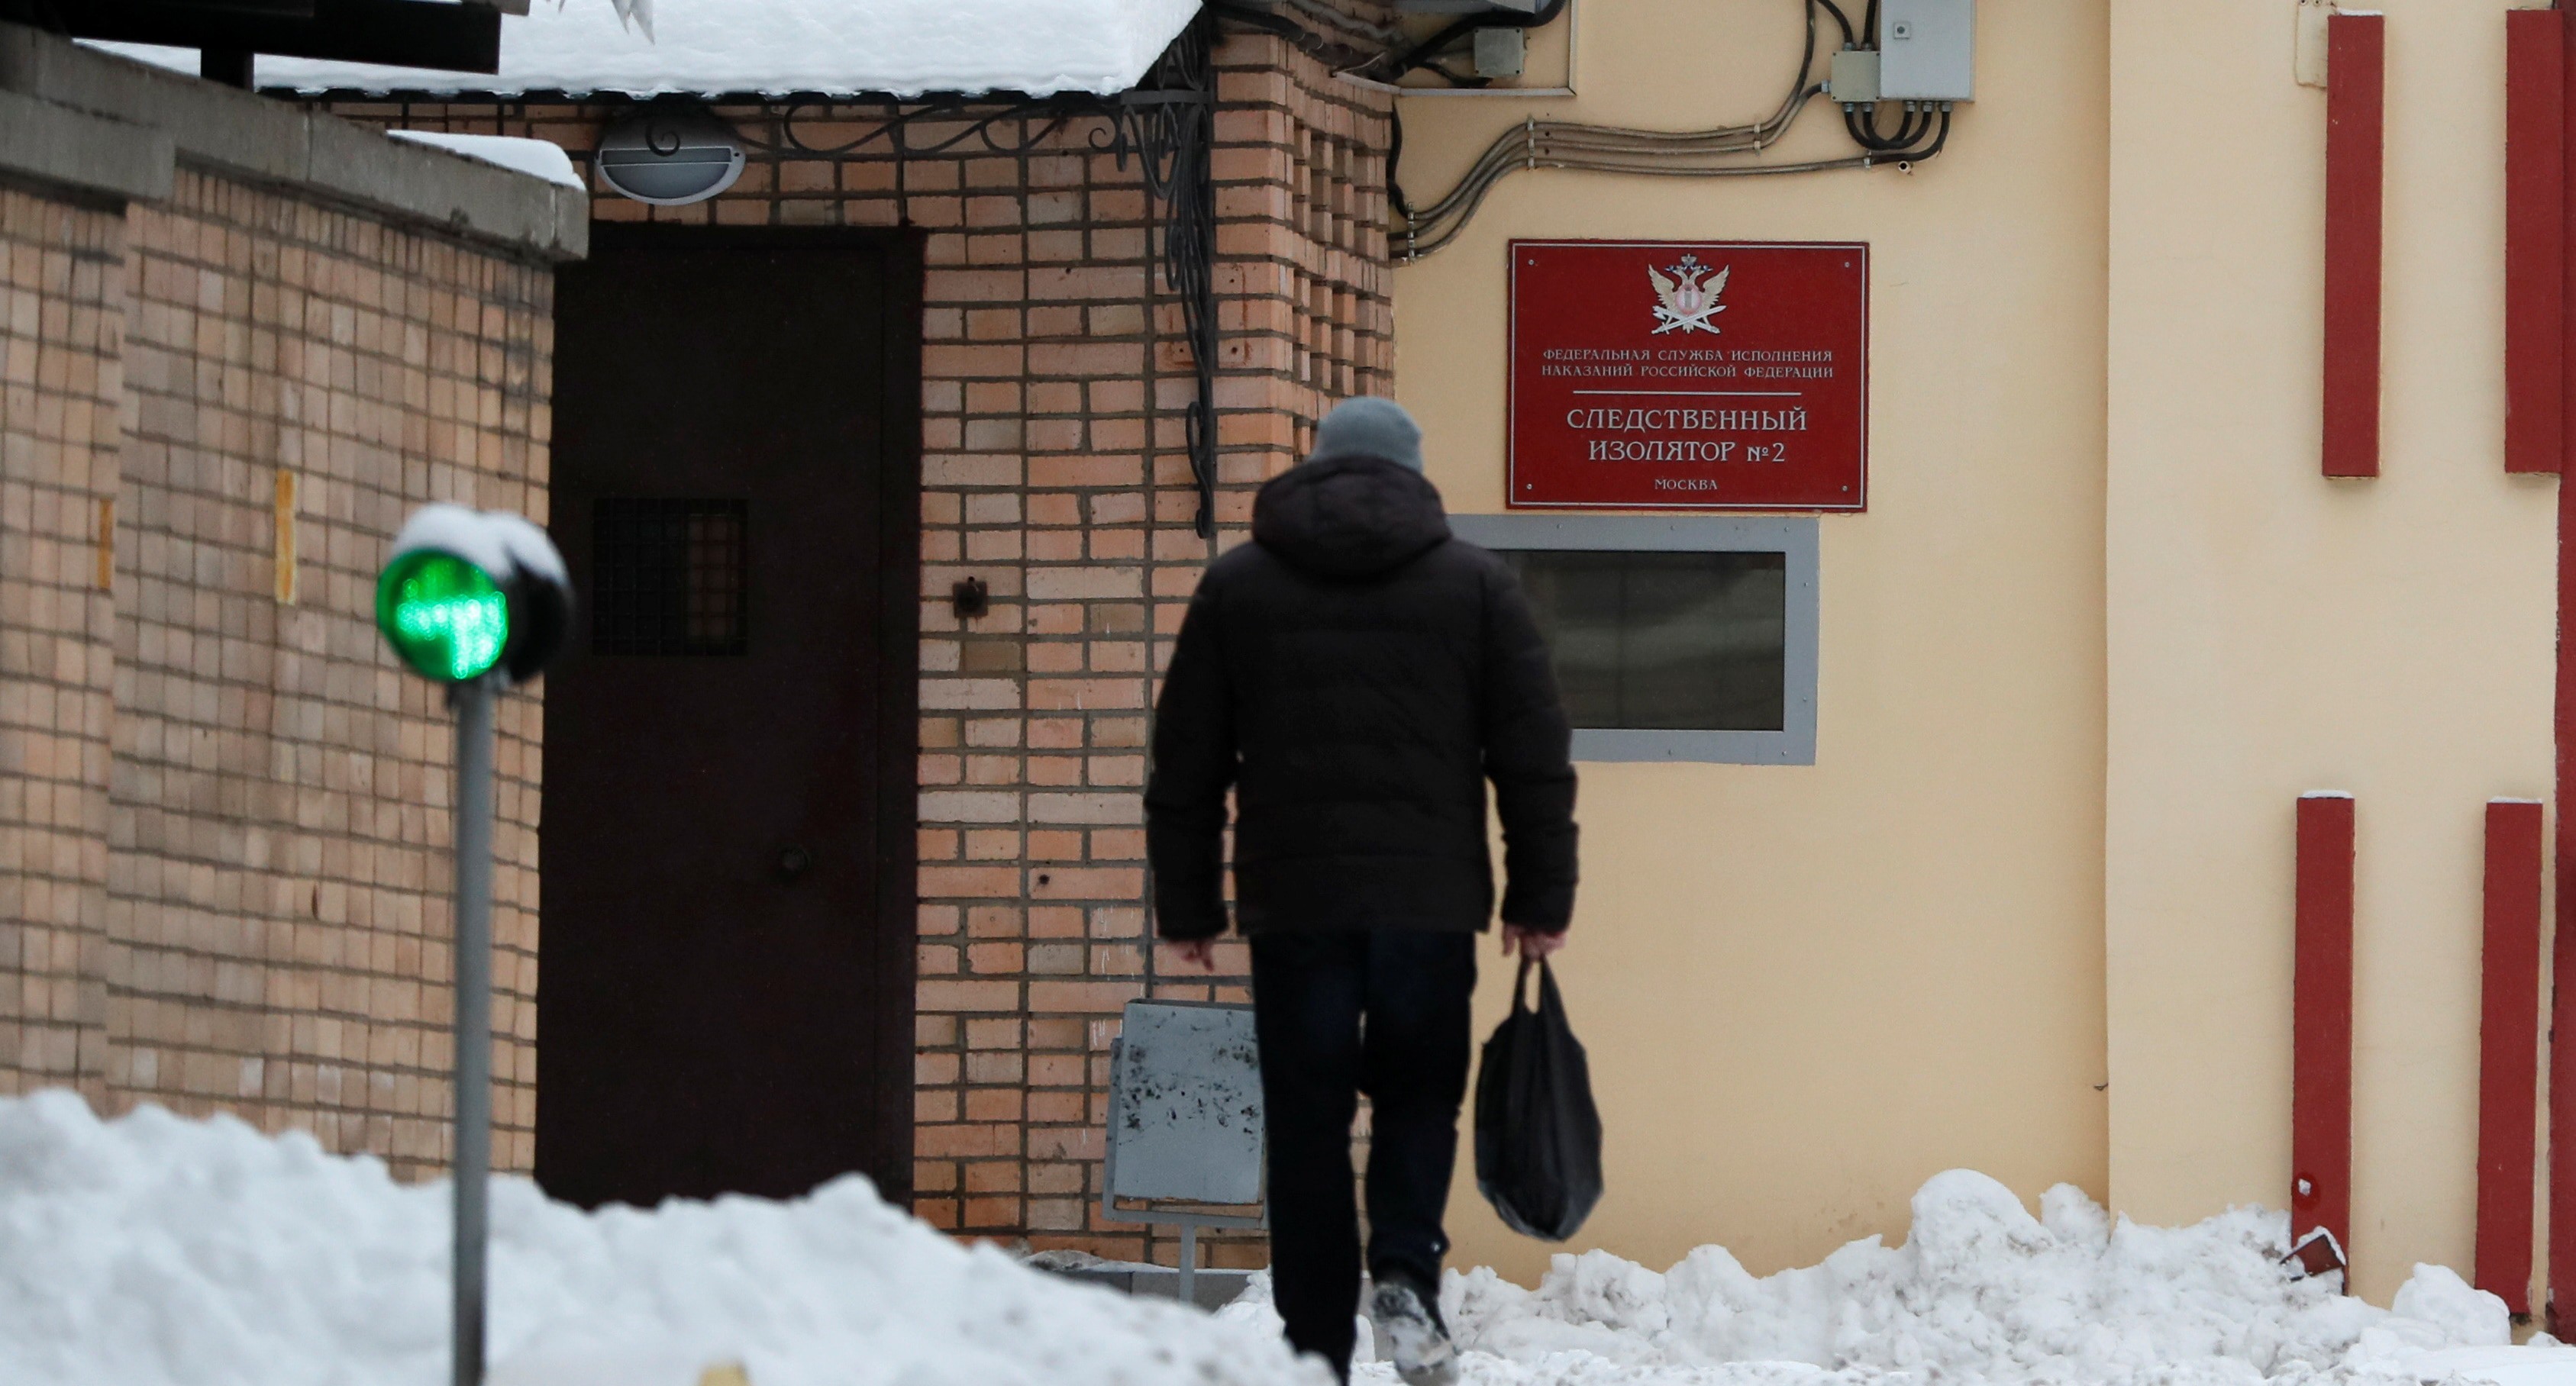 Здание СИЗО "Лефортово", в котором находится Арашуков. Фото:  
REUTERS/Shamil Zhumatov